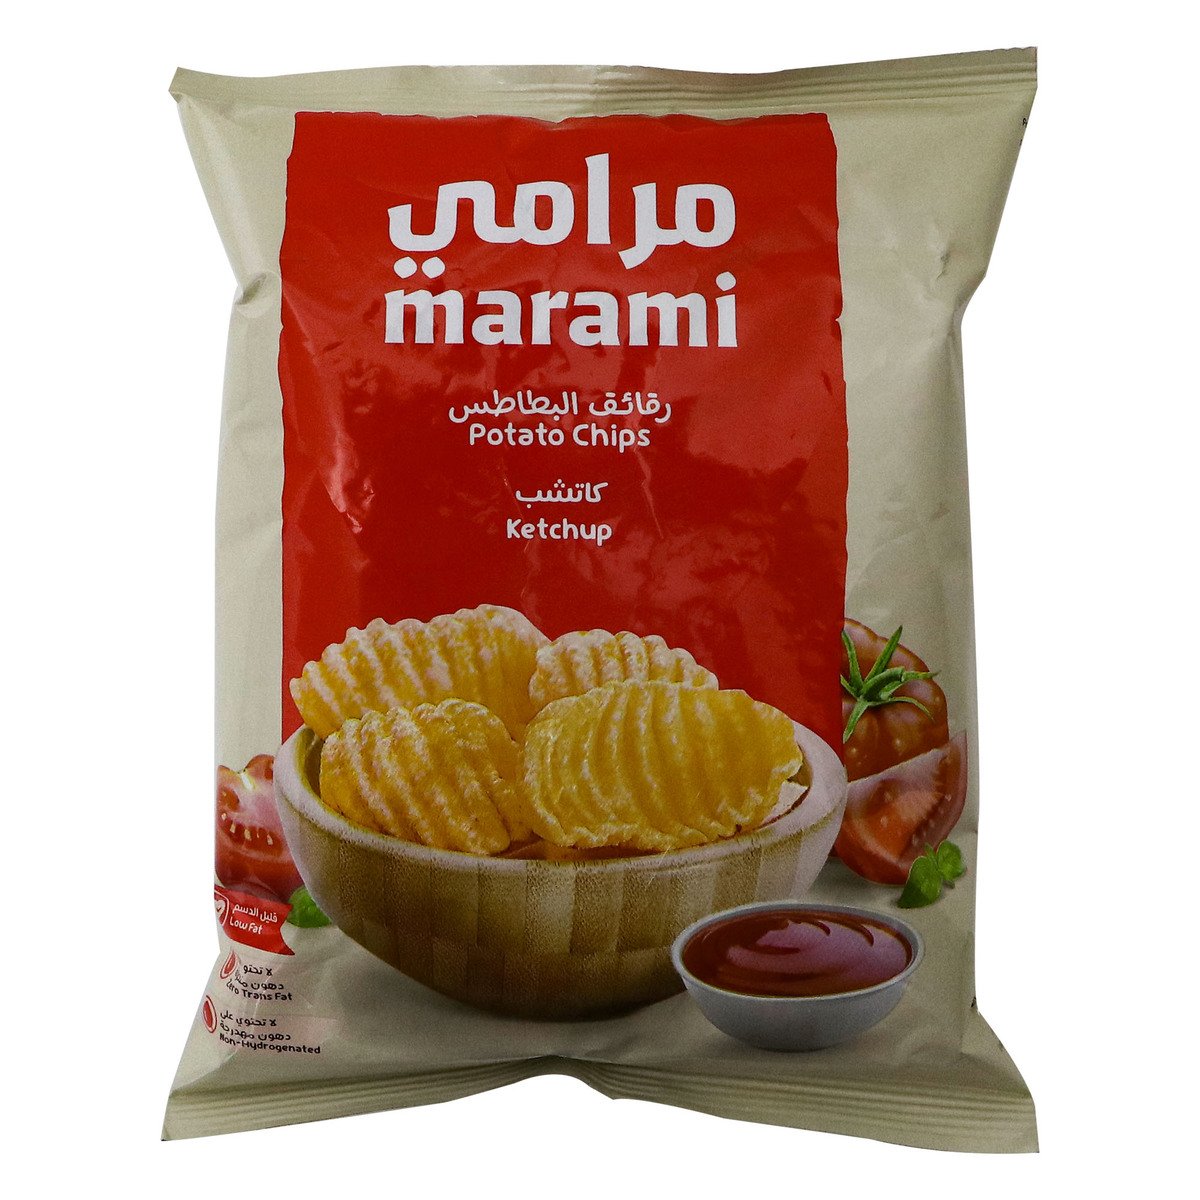 Marami Potato Chips Ketchup 35g